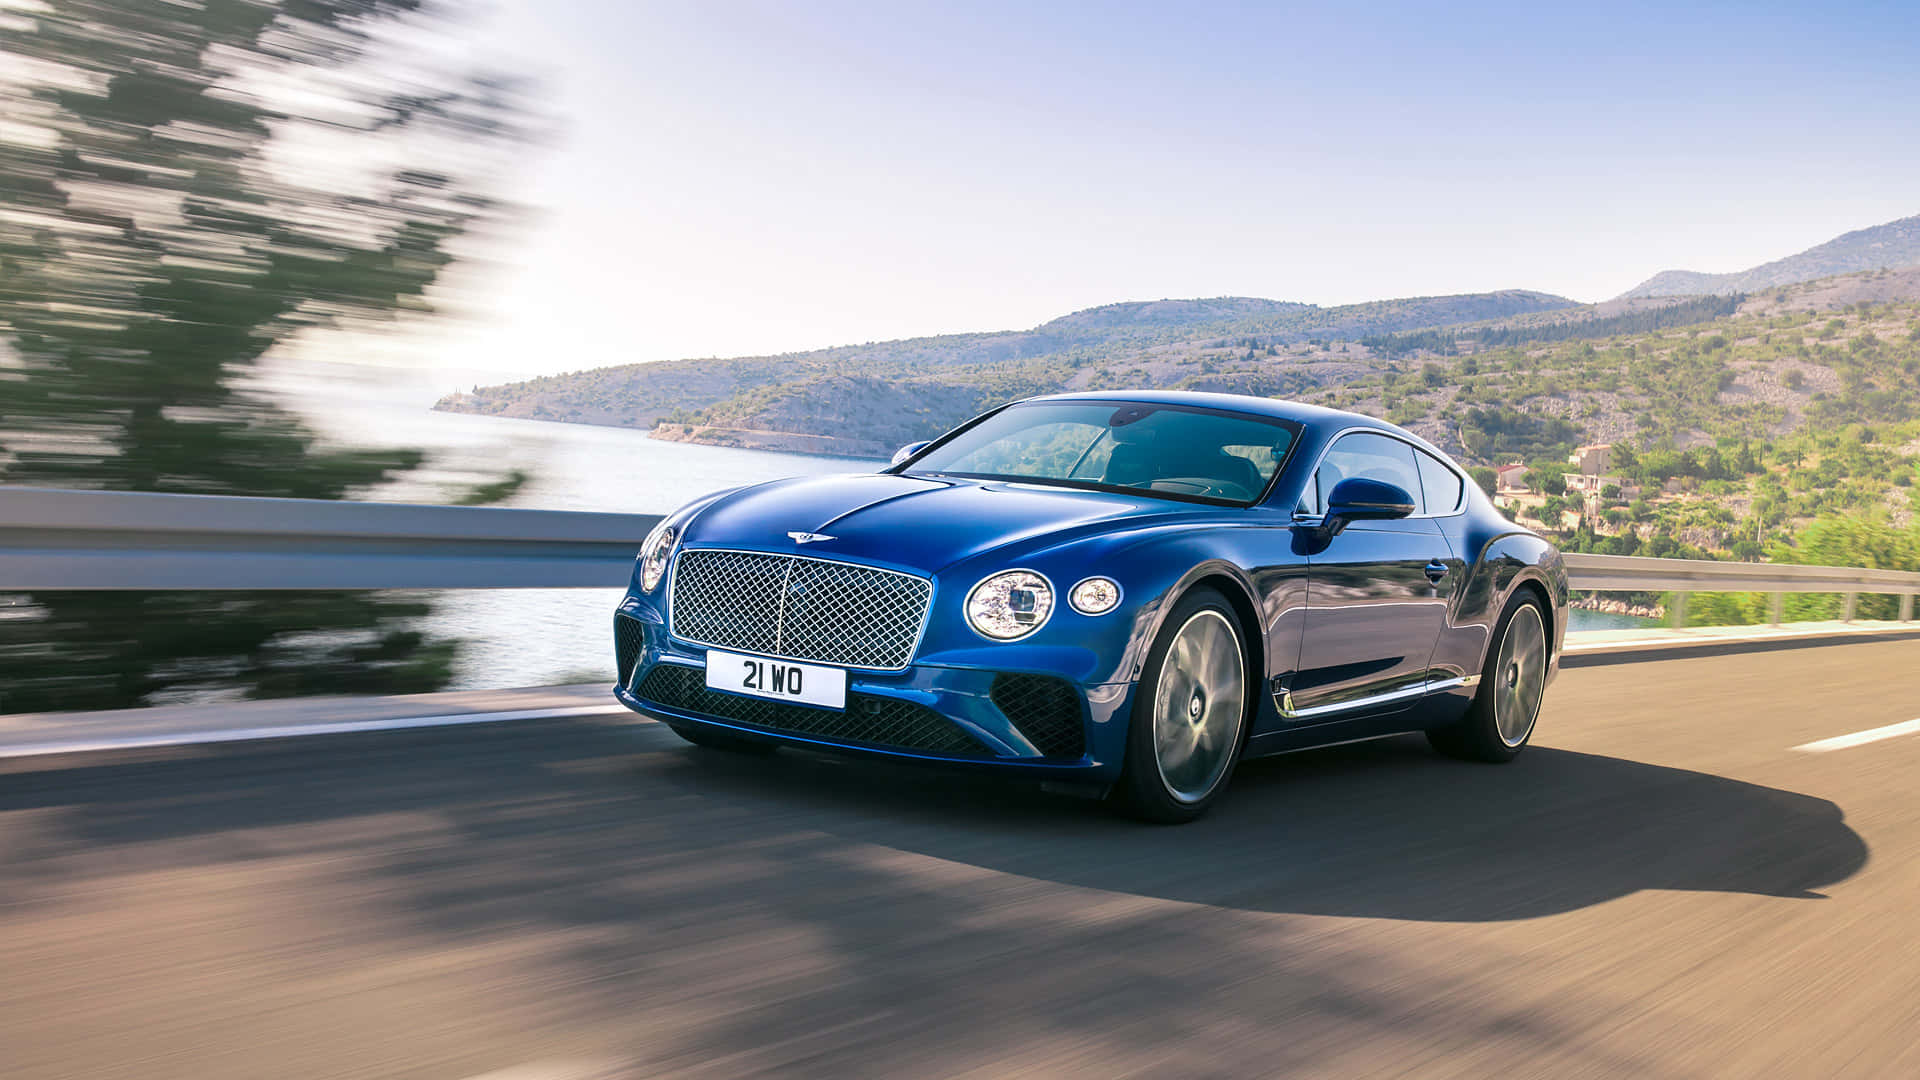 Sleek and Luxurious Bentley Continental GT Wallpaper